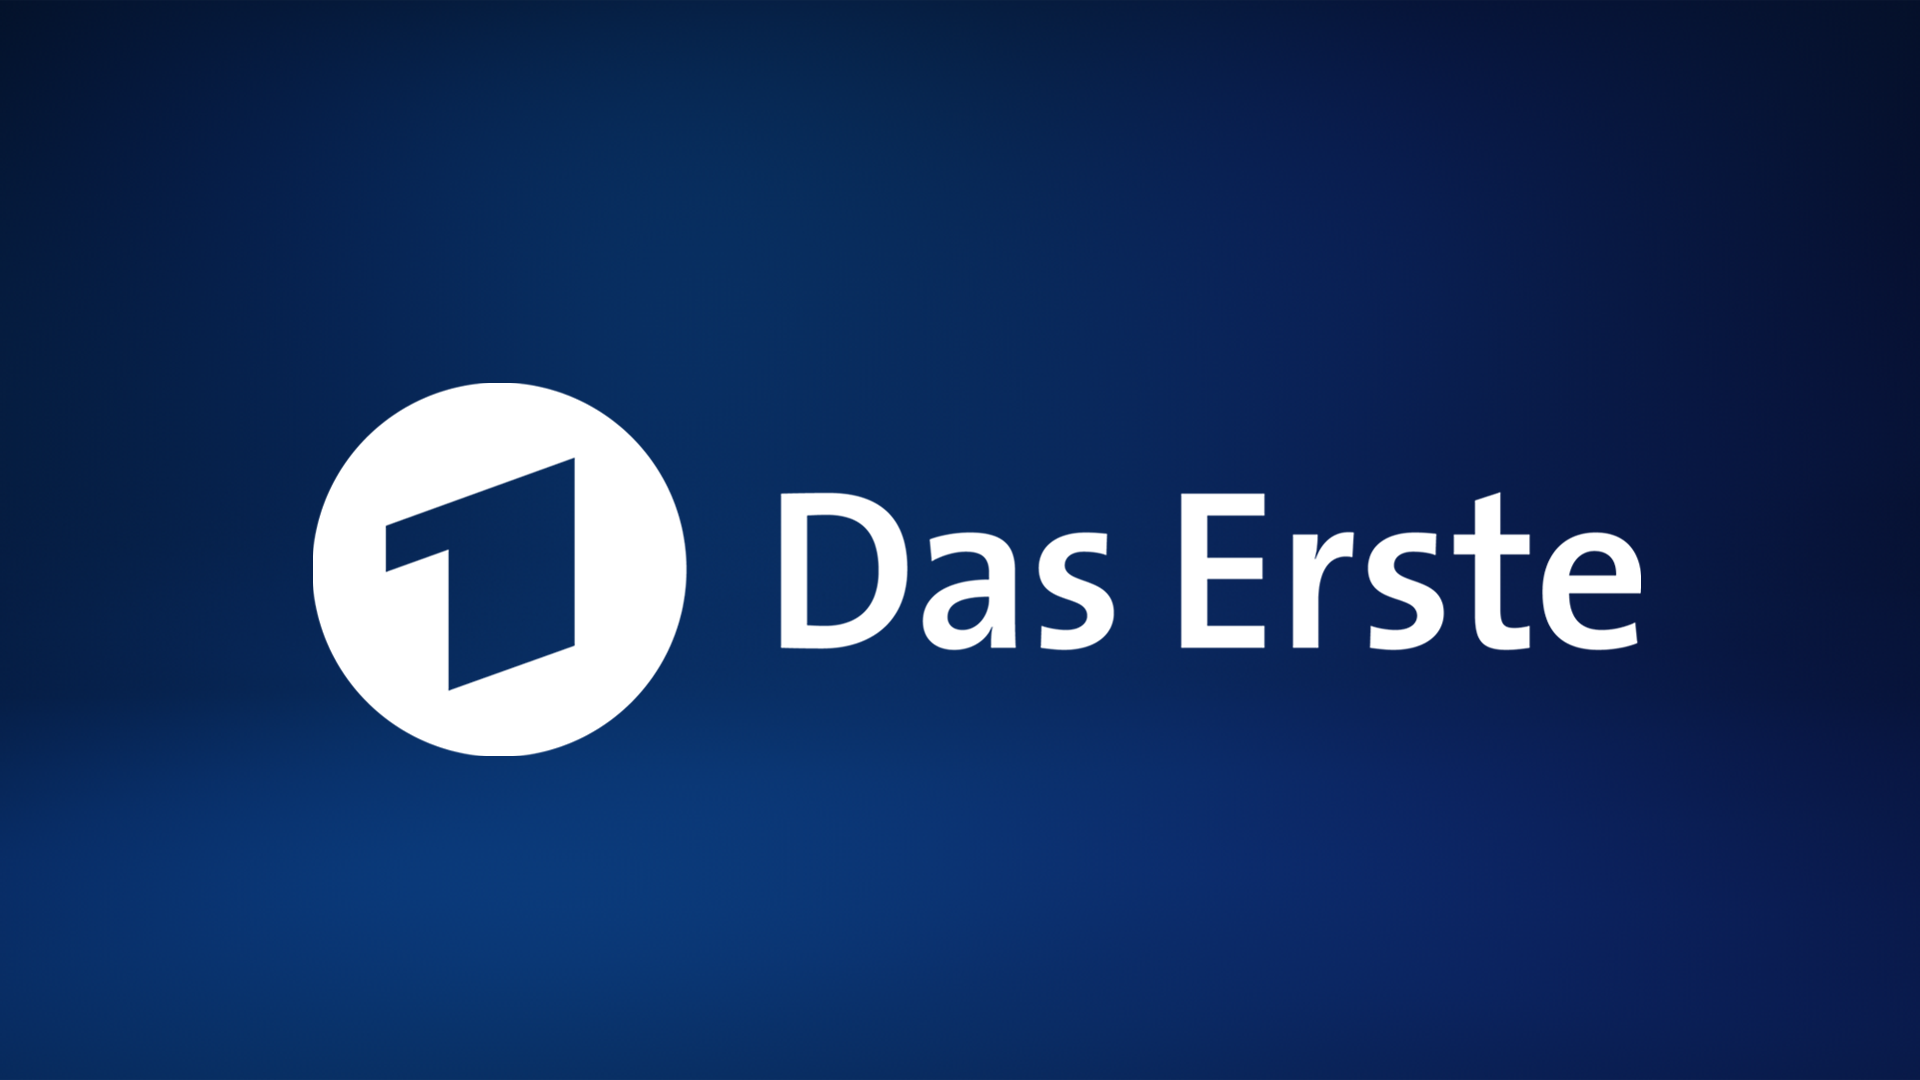 Das Erste - Livestream der ARD | ARD Mediathek